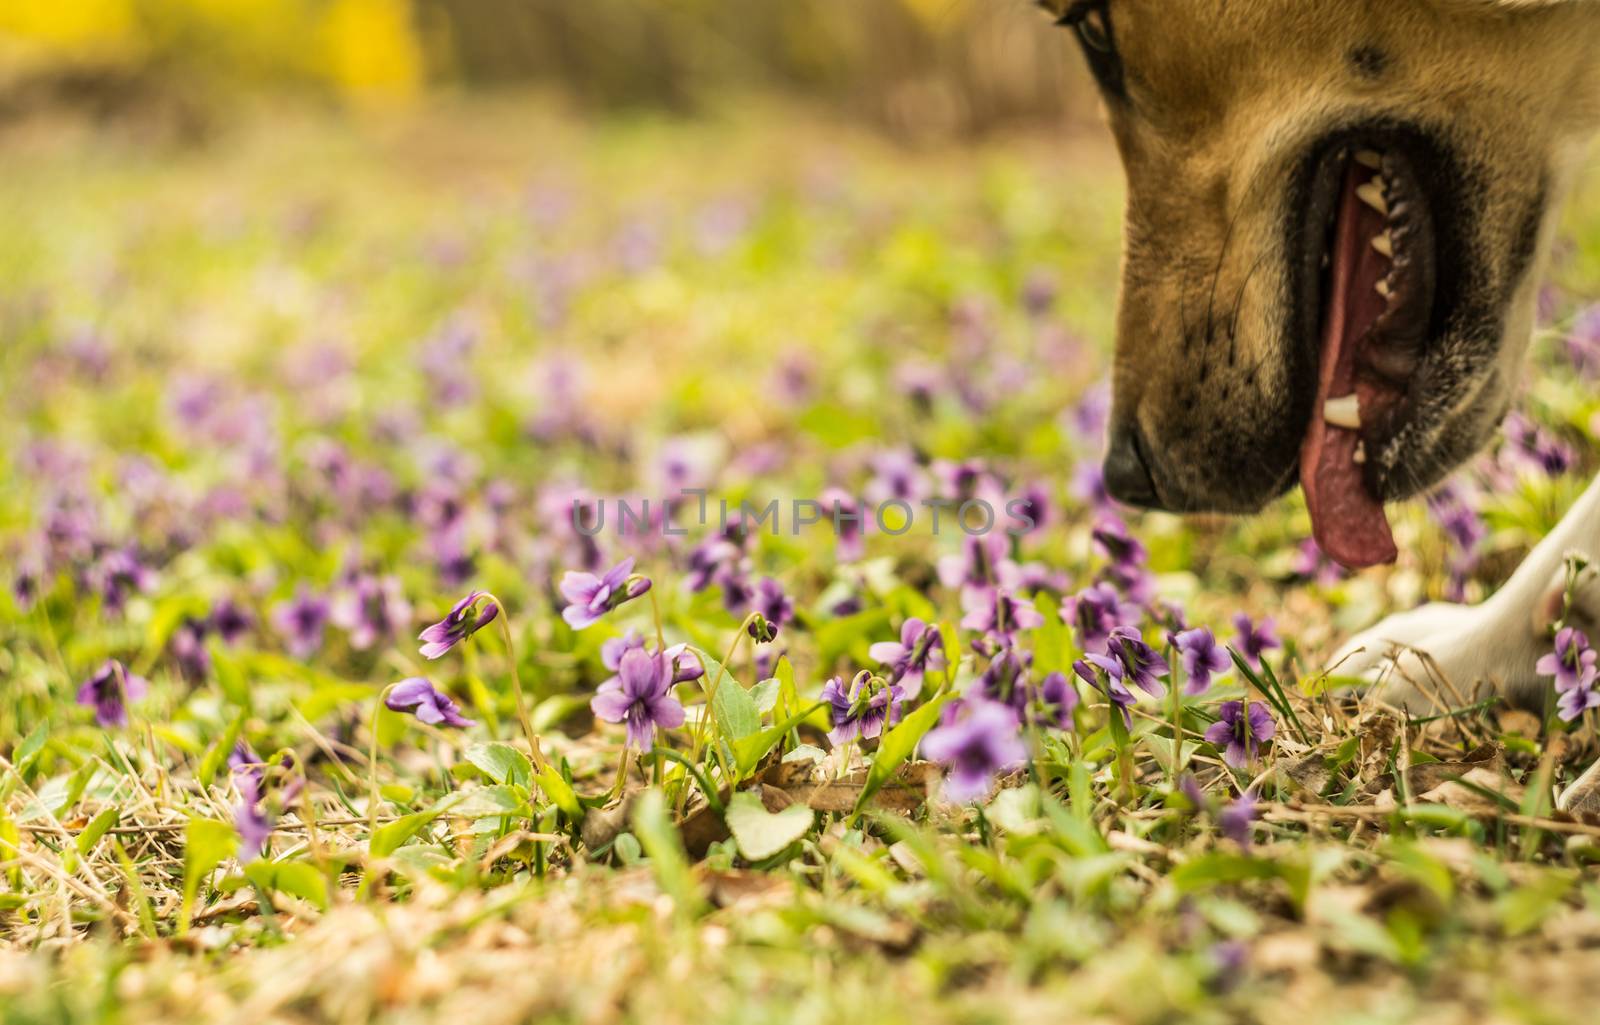 a dog smells purple flowers on a lawn by Desperada